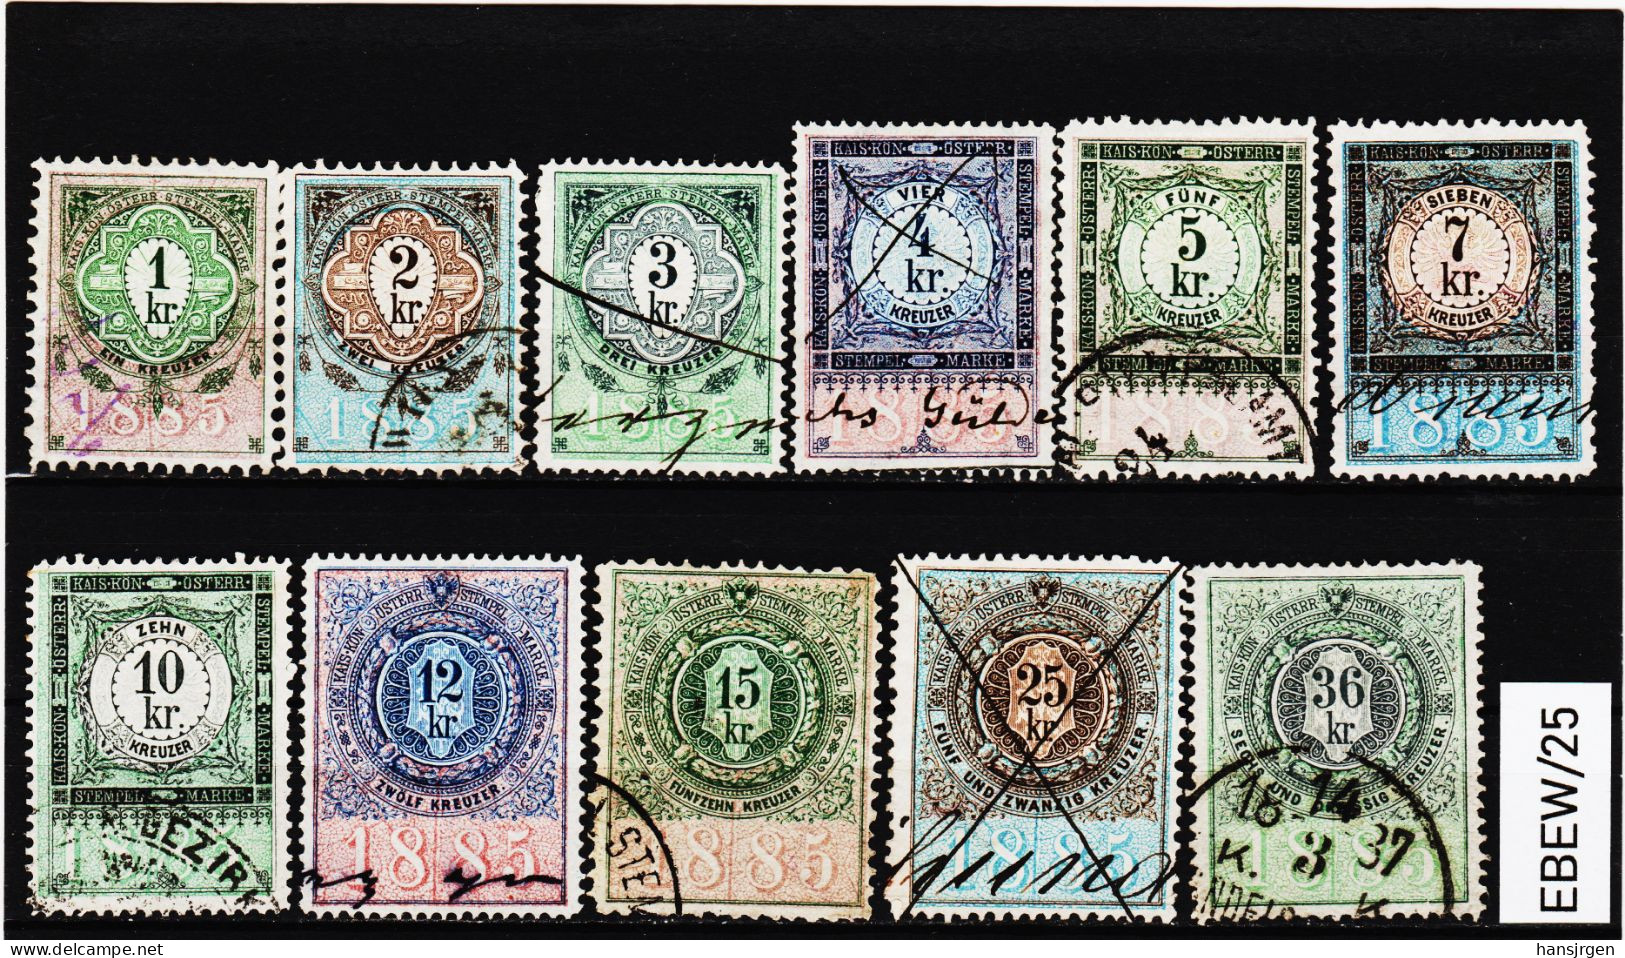 EBEW/25 LOT STEMPELMARKEN STEUERMARKEN ÖSTERREICH 1885  1-2-3-4-5-7-10-12-15-25-36 Kreuzer  Entwertet - Revenue Stamps